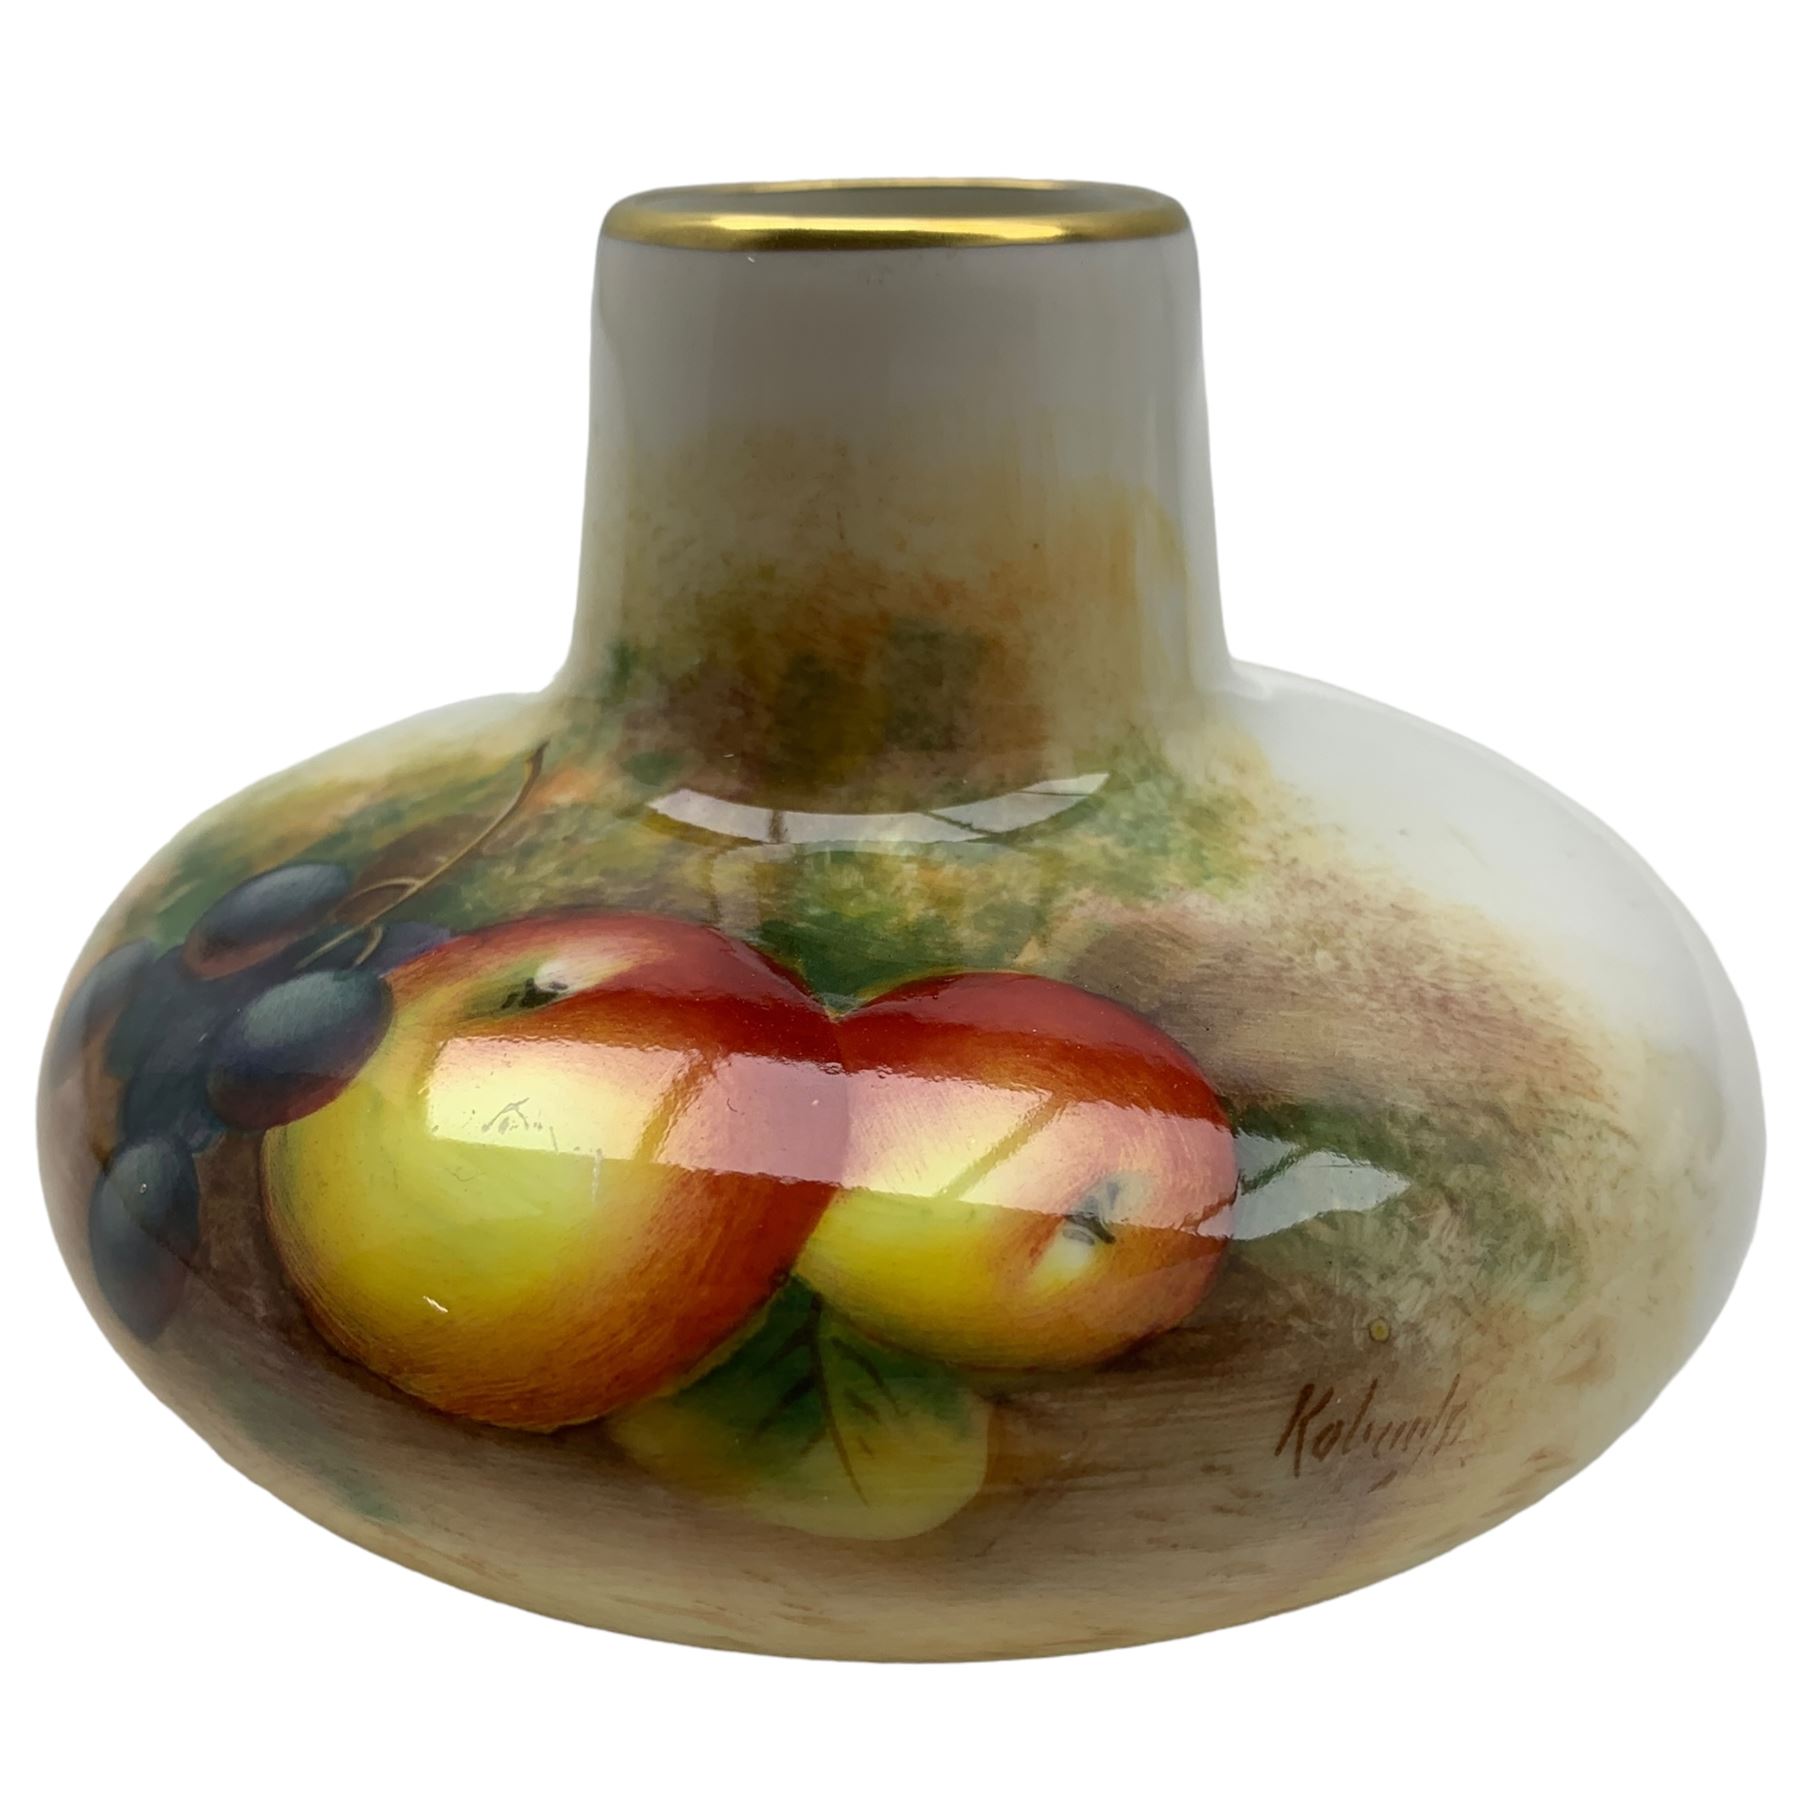 Royal Worcester porcelain squat form vase - Image 3 of 5